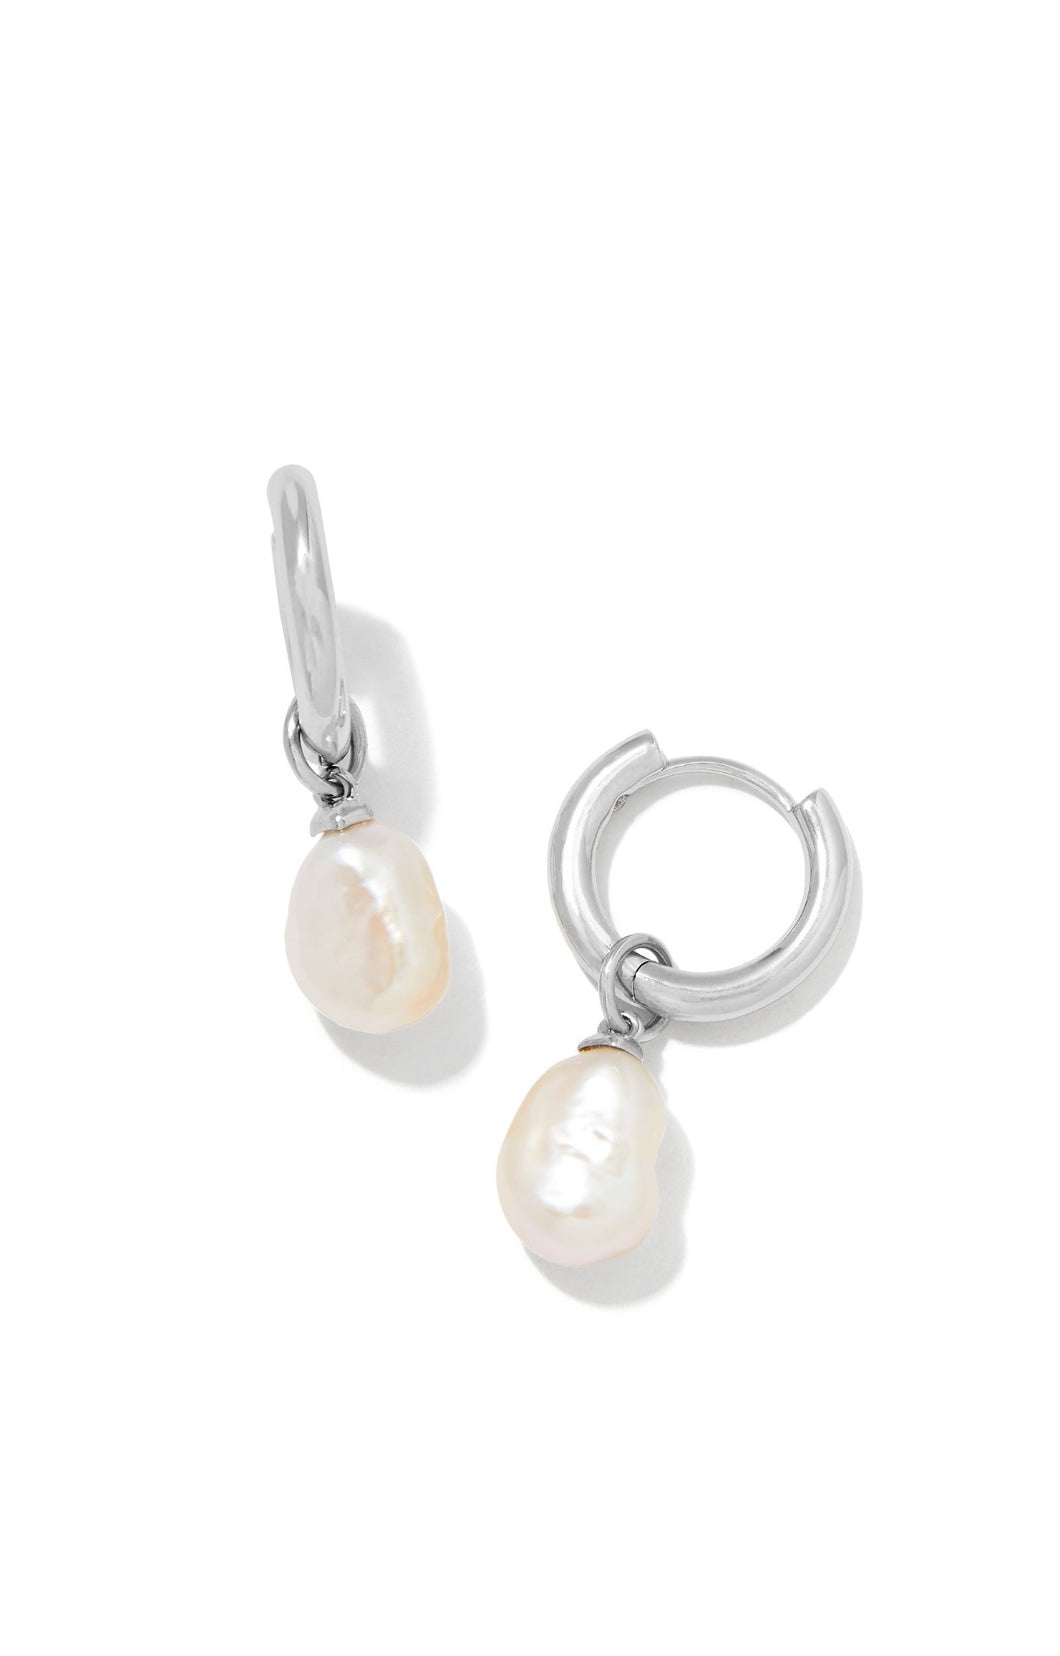 Kendra Scott: Willa Pearl Huggie Earrings in Silver White Pearl